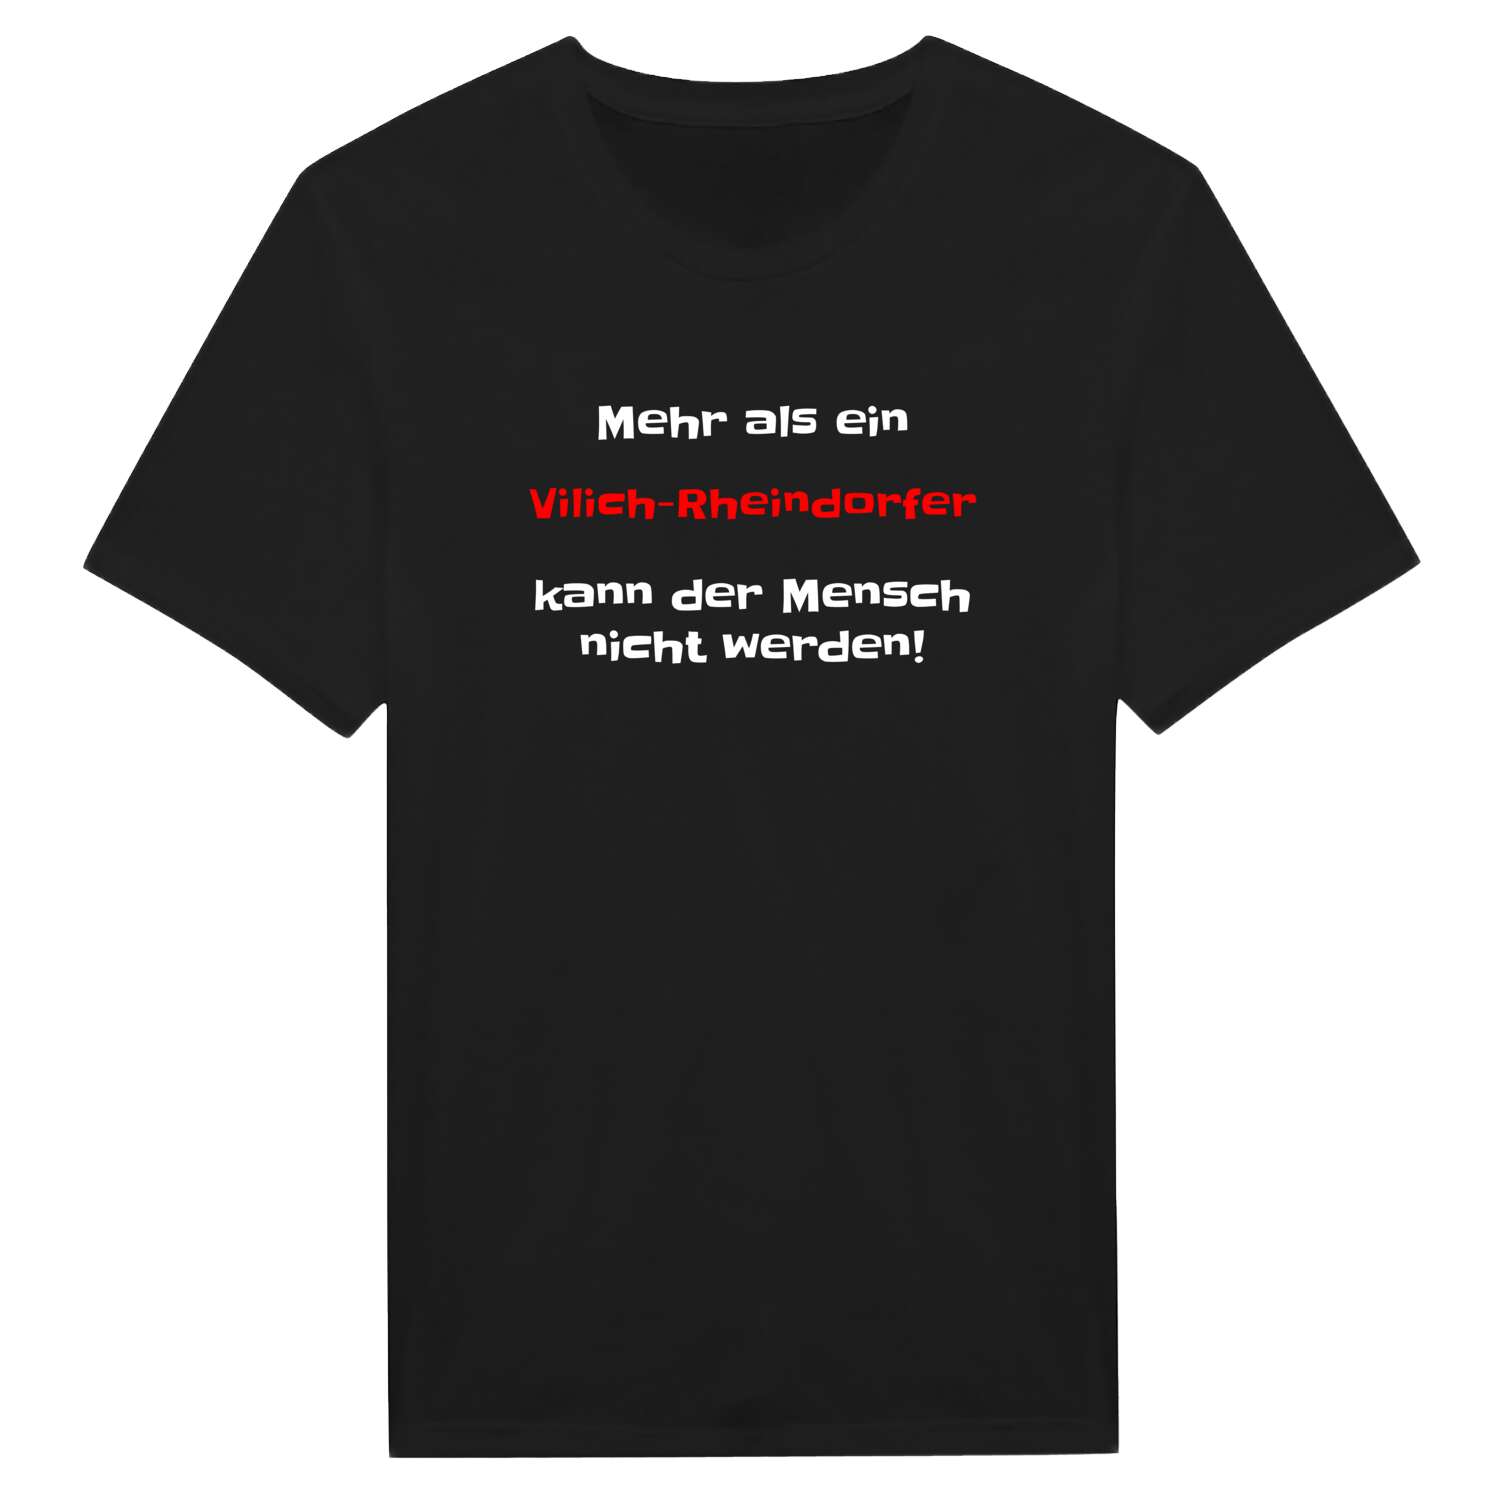 Vilich-Rheindorf T-Shirt »Mehr als ein«